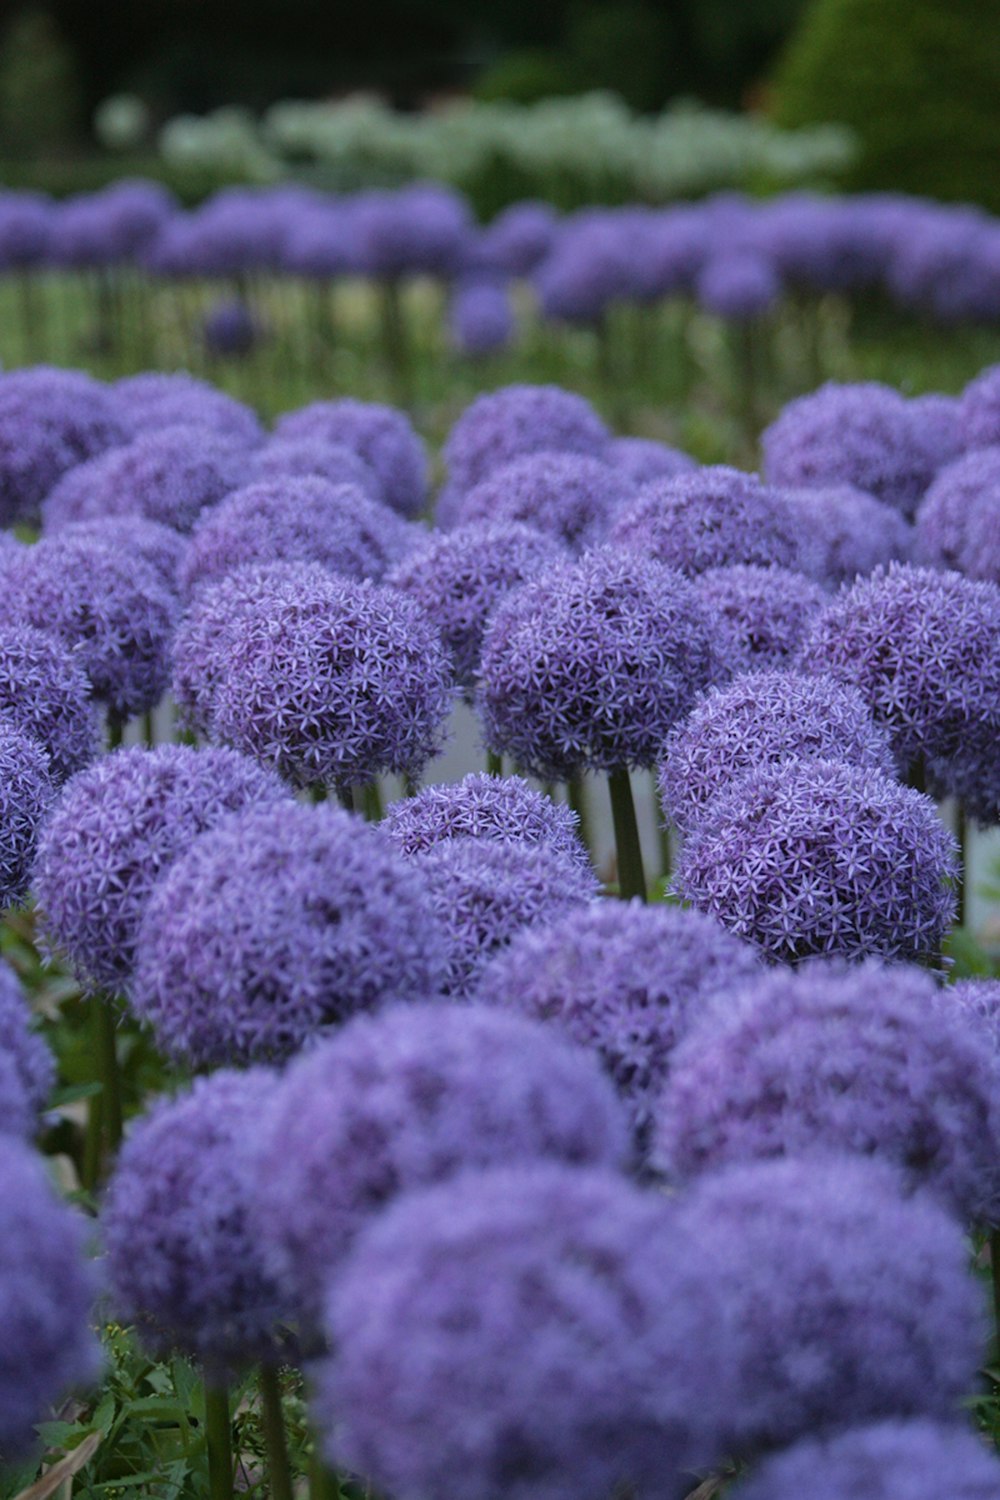 a field of purple flowers in a garden